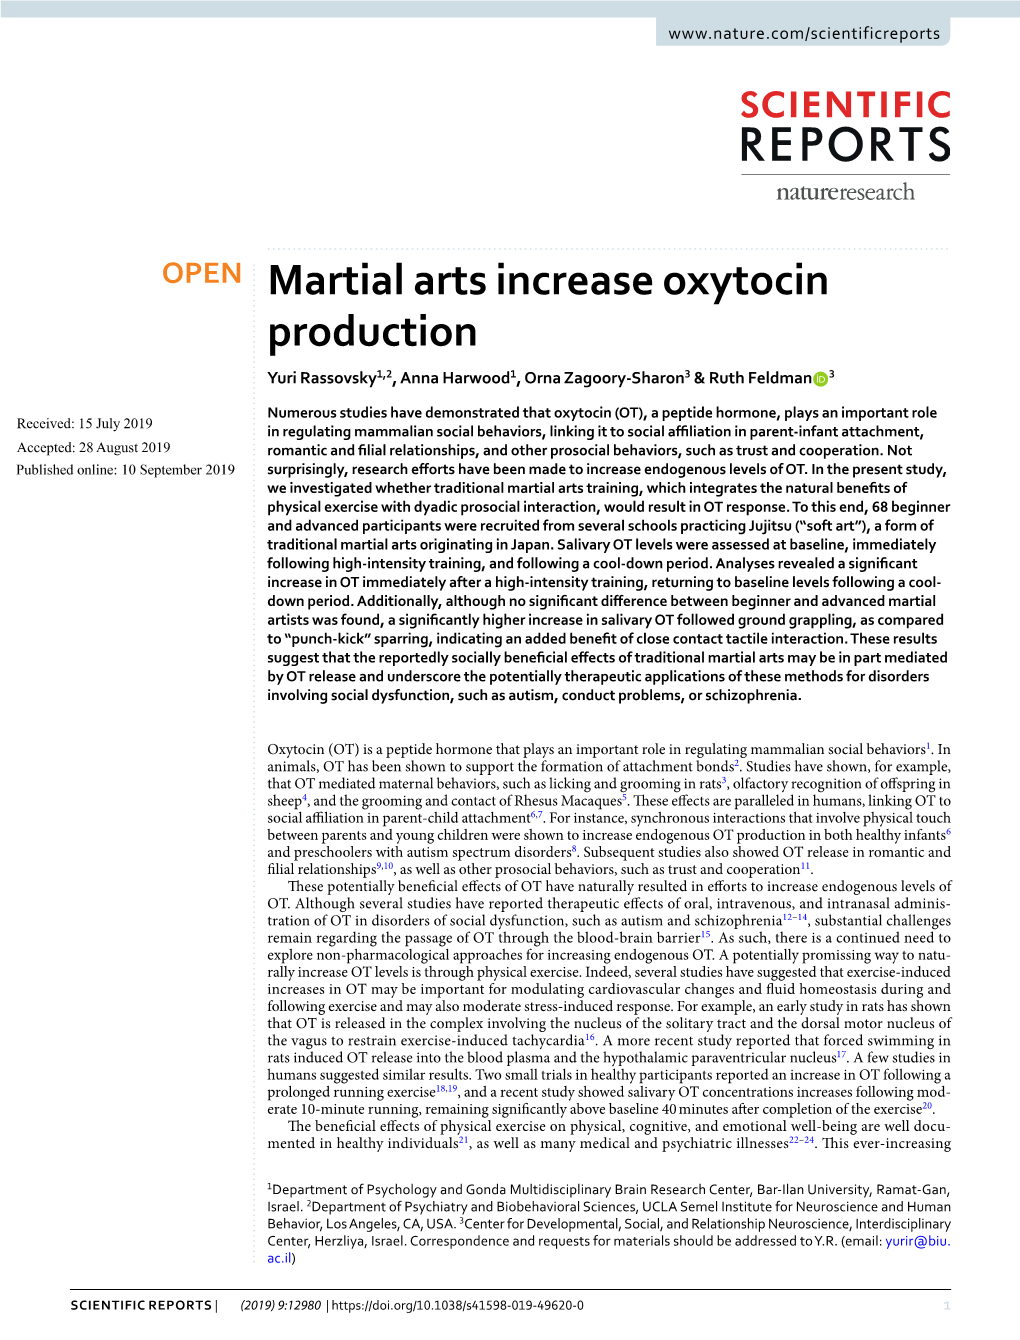 Martial Arts Increase Oxytocin Production Yuri Rassovsky1,2, Anna Harwood1, Orna Zagoory-Sharon3 & Ruth Feldman 3